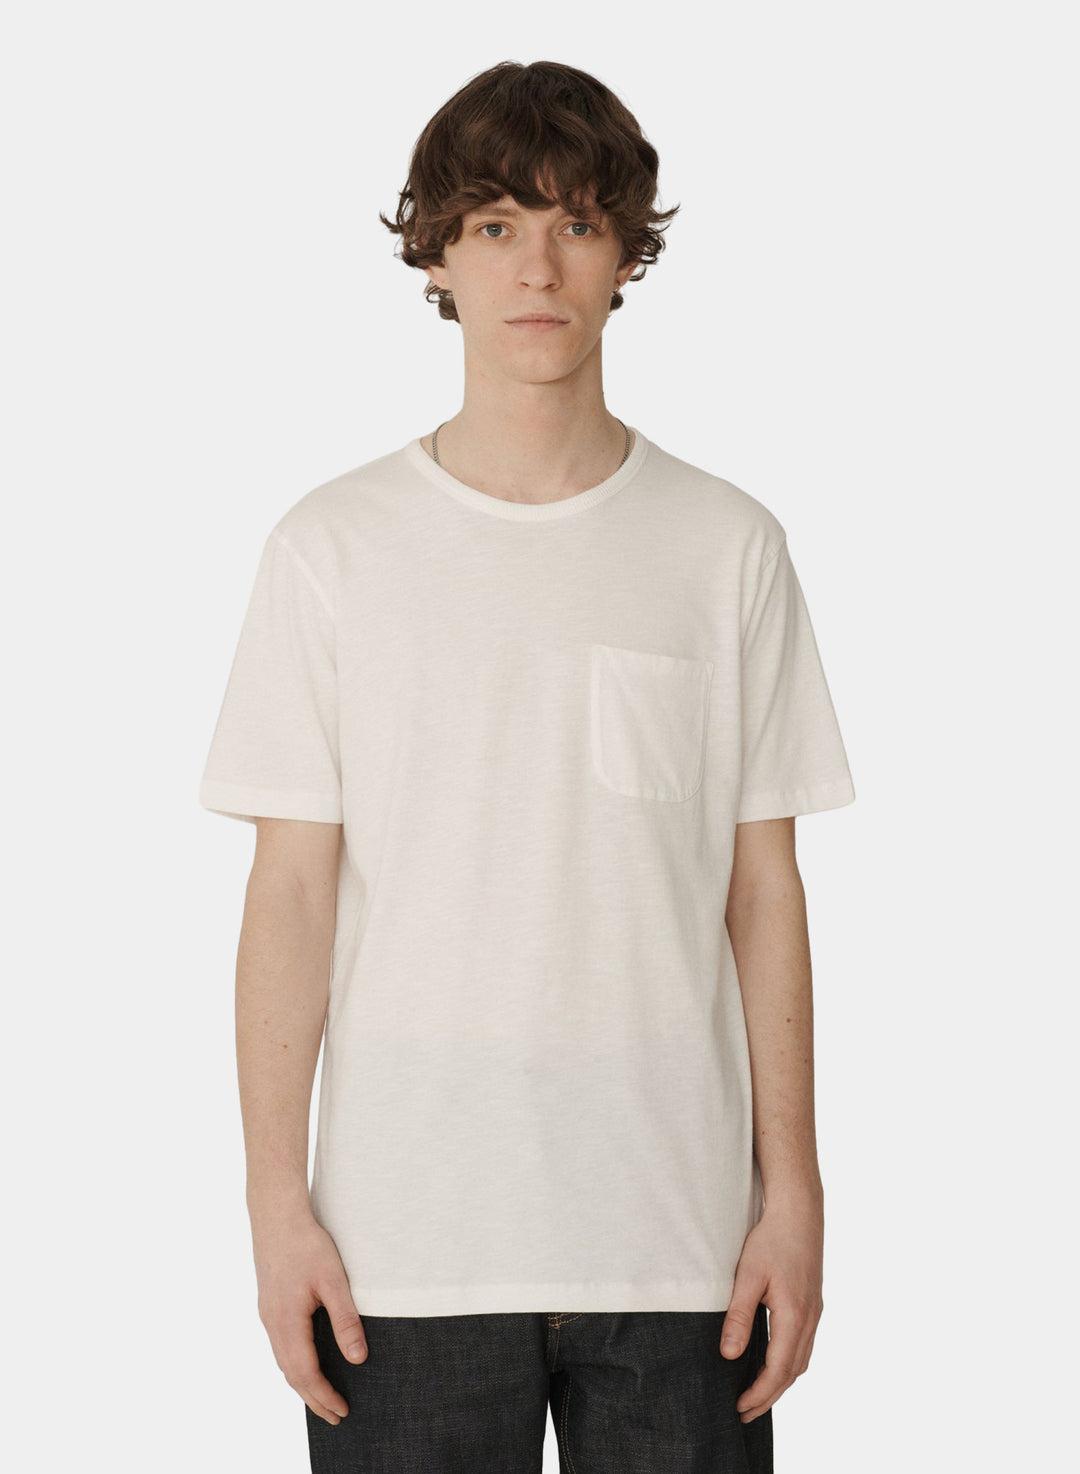 YMC Wild Ones T-Shirt - White